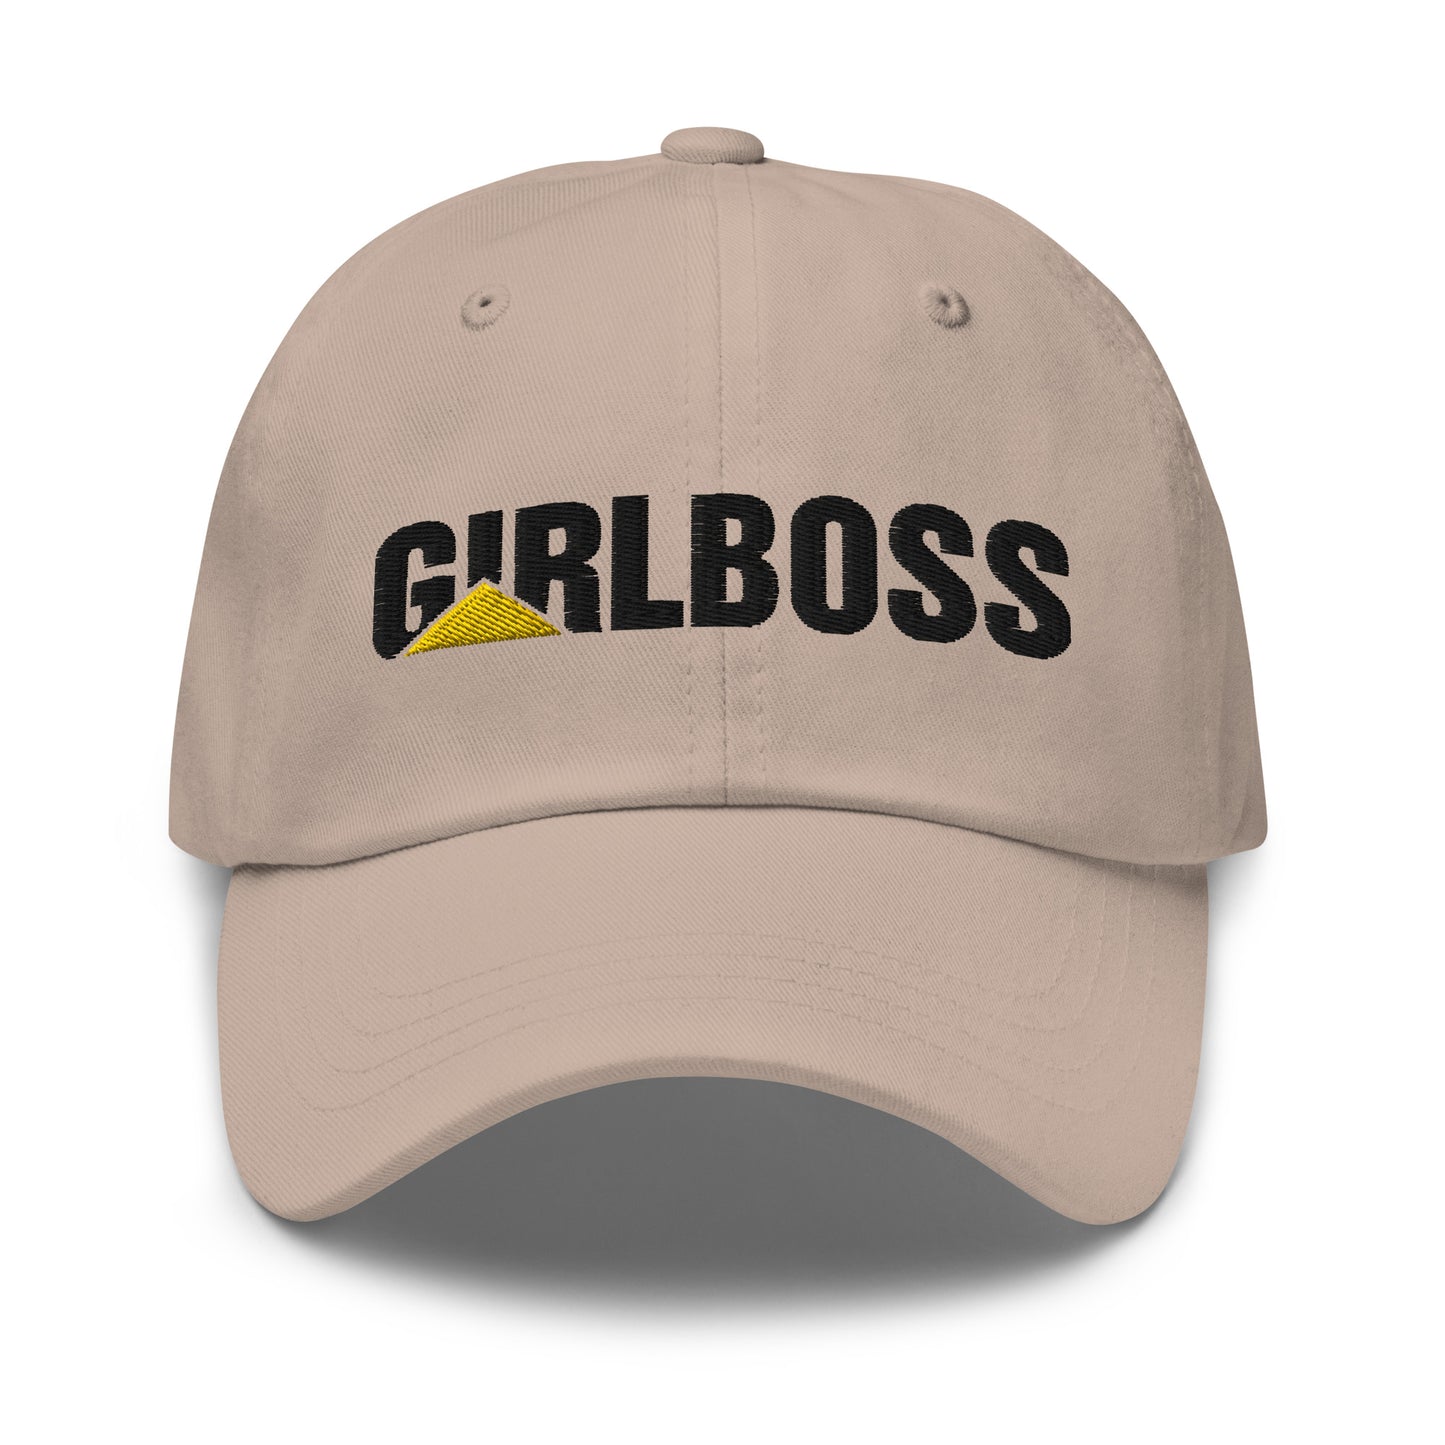 Girlboss (Caterpillar) hat